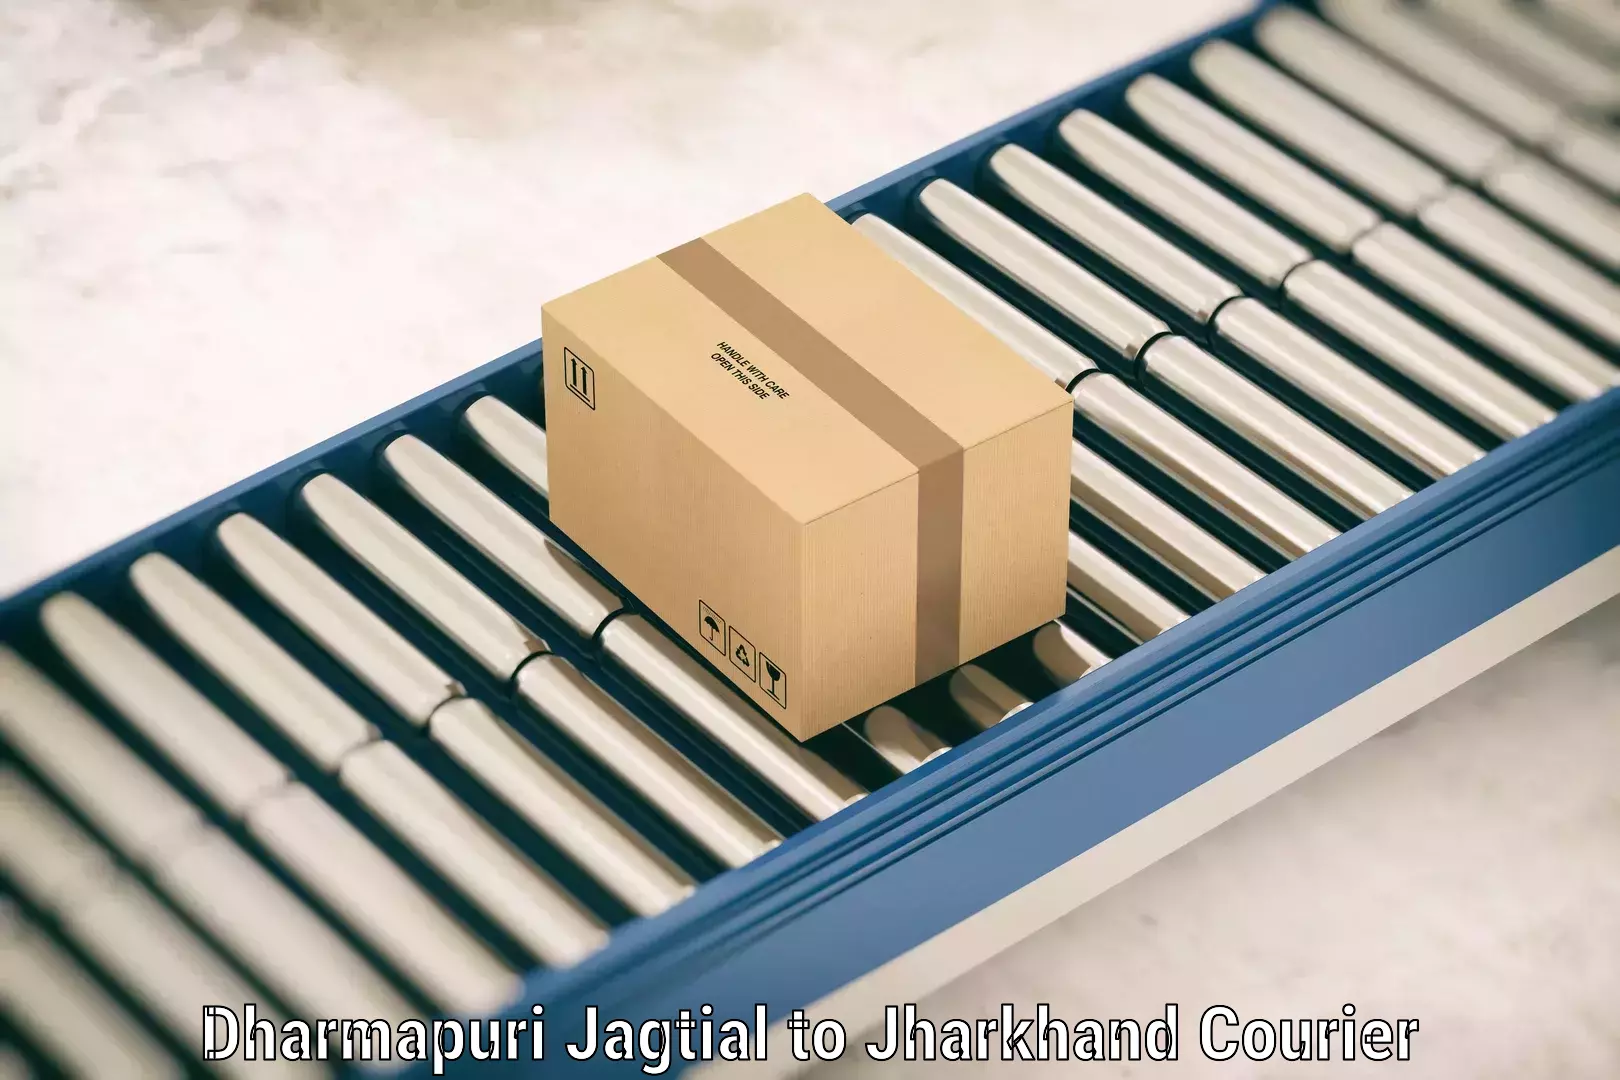 Premium luggage delivery Dharmapuri Jagtial to Koderma